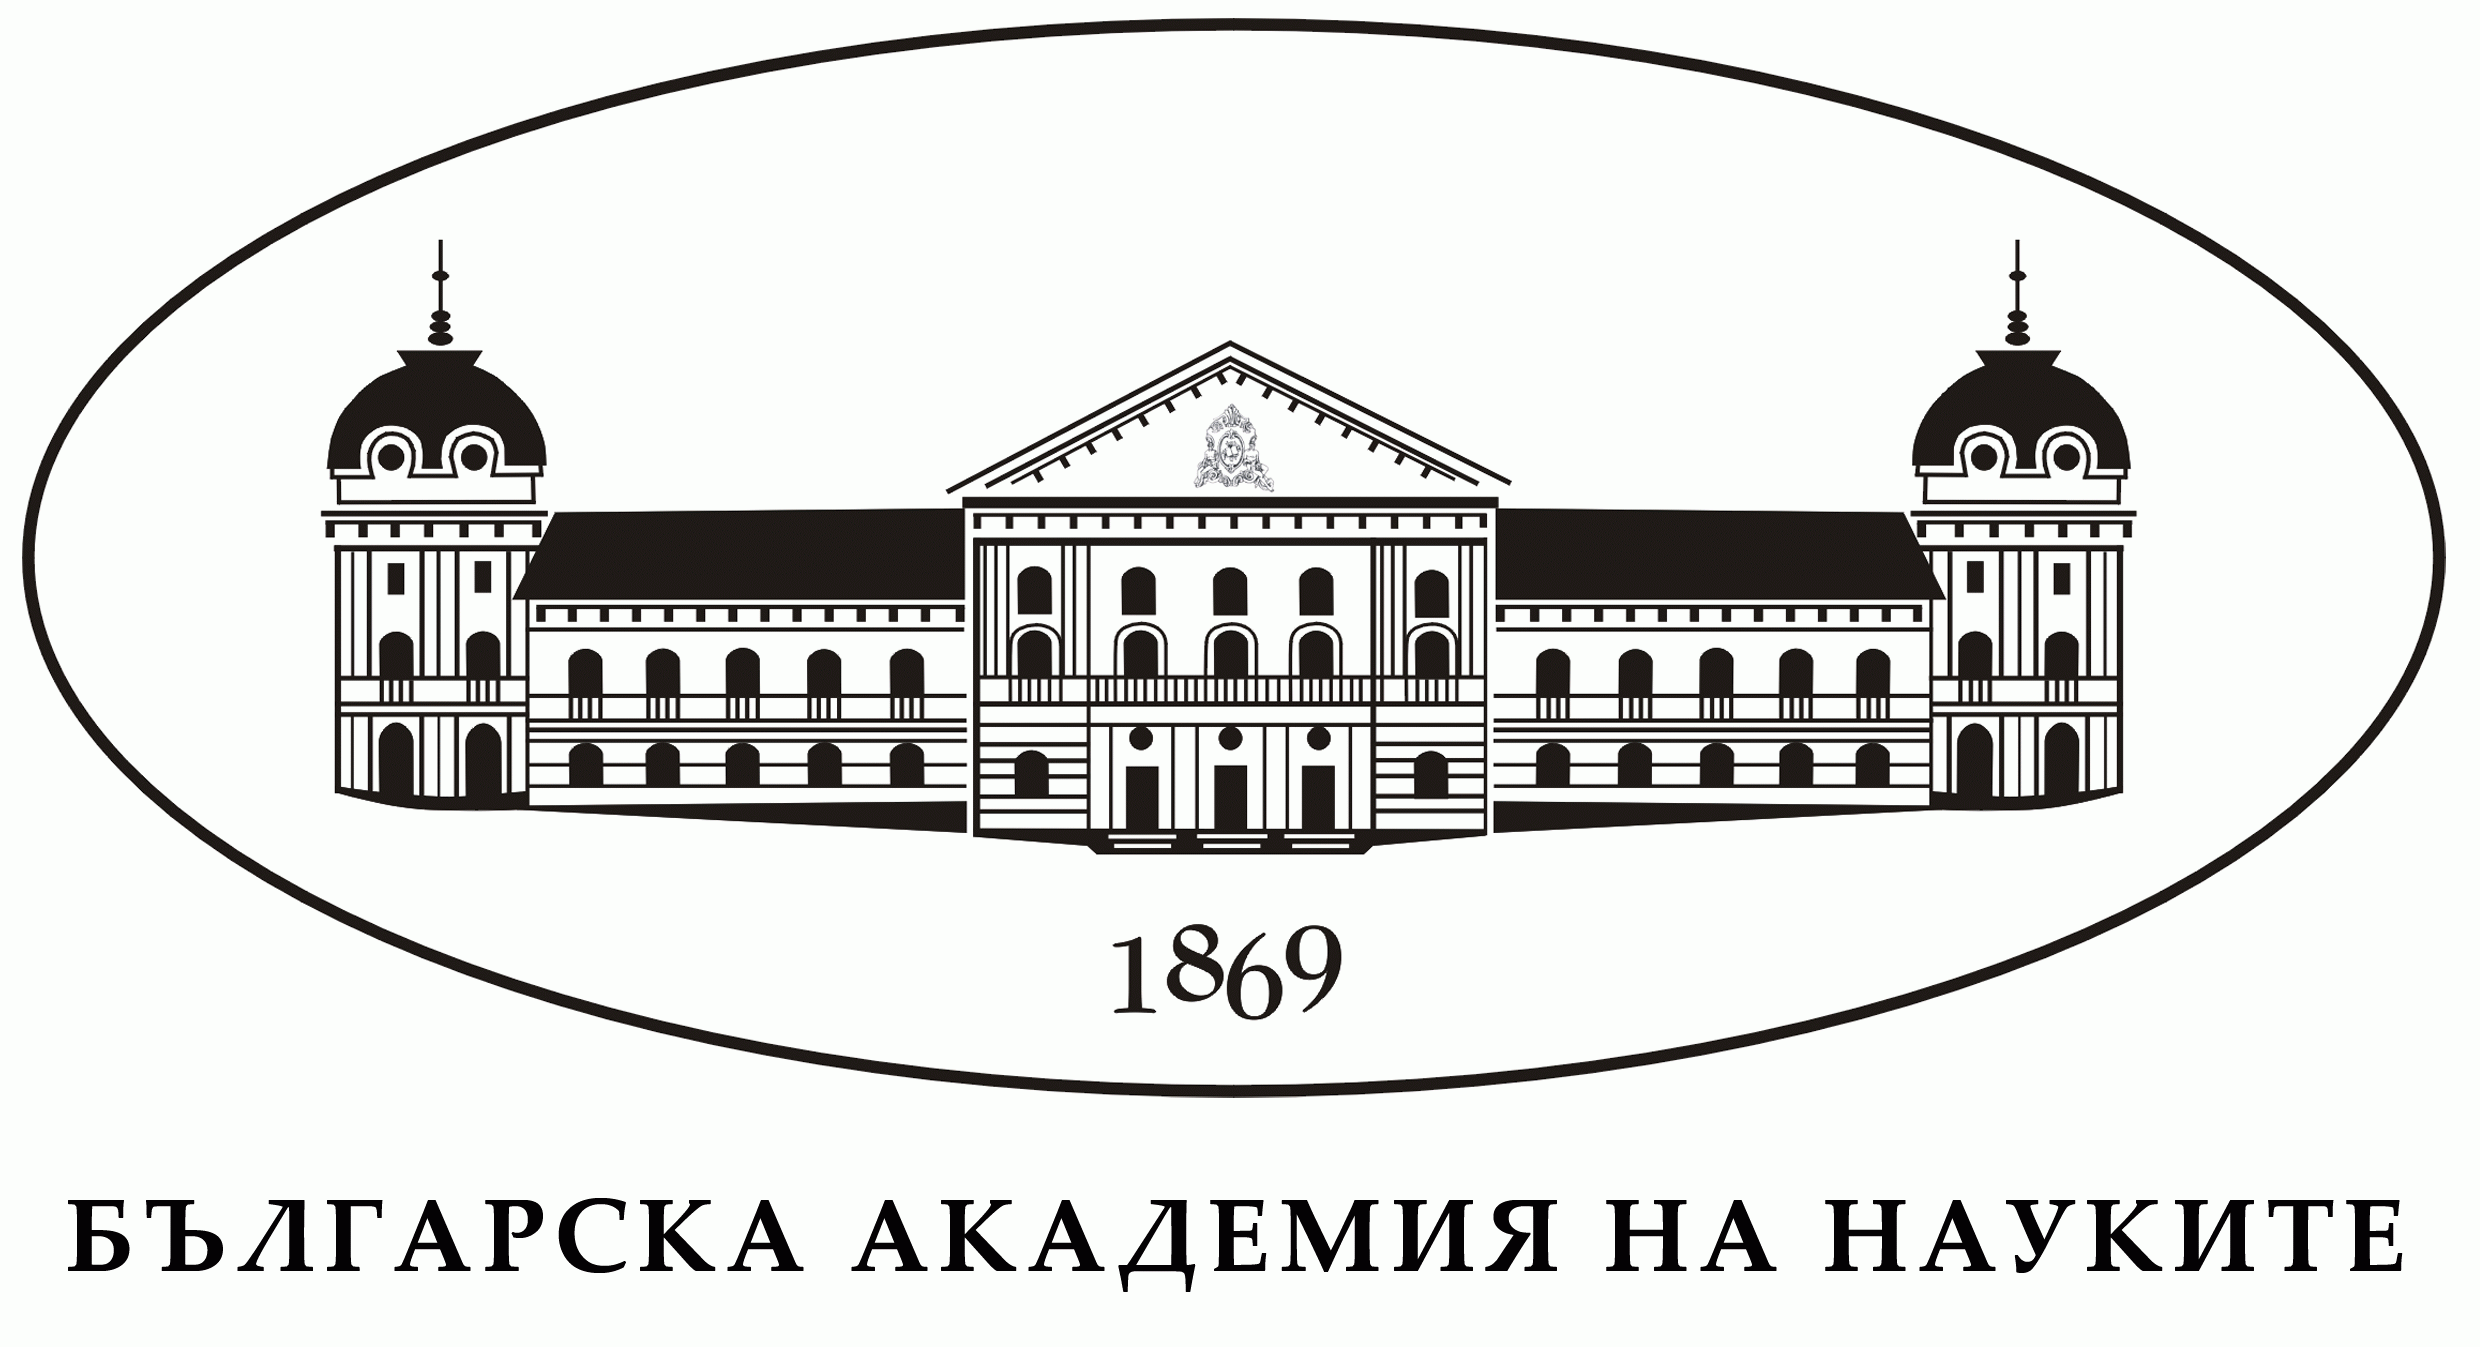 Αποτέλεσμα εικόνας για bulgarian academy of sciences